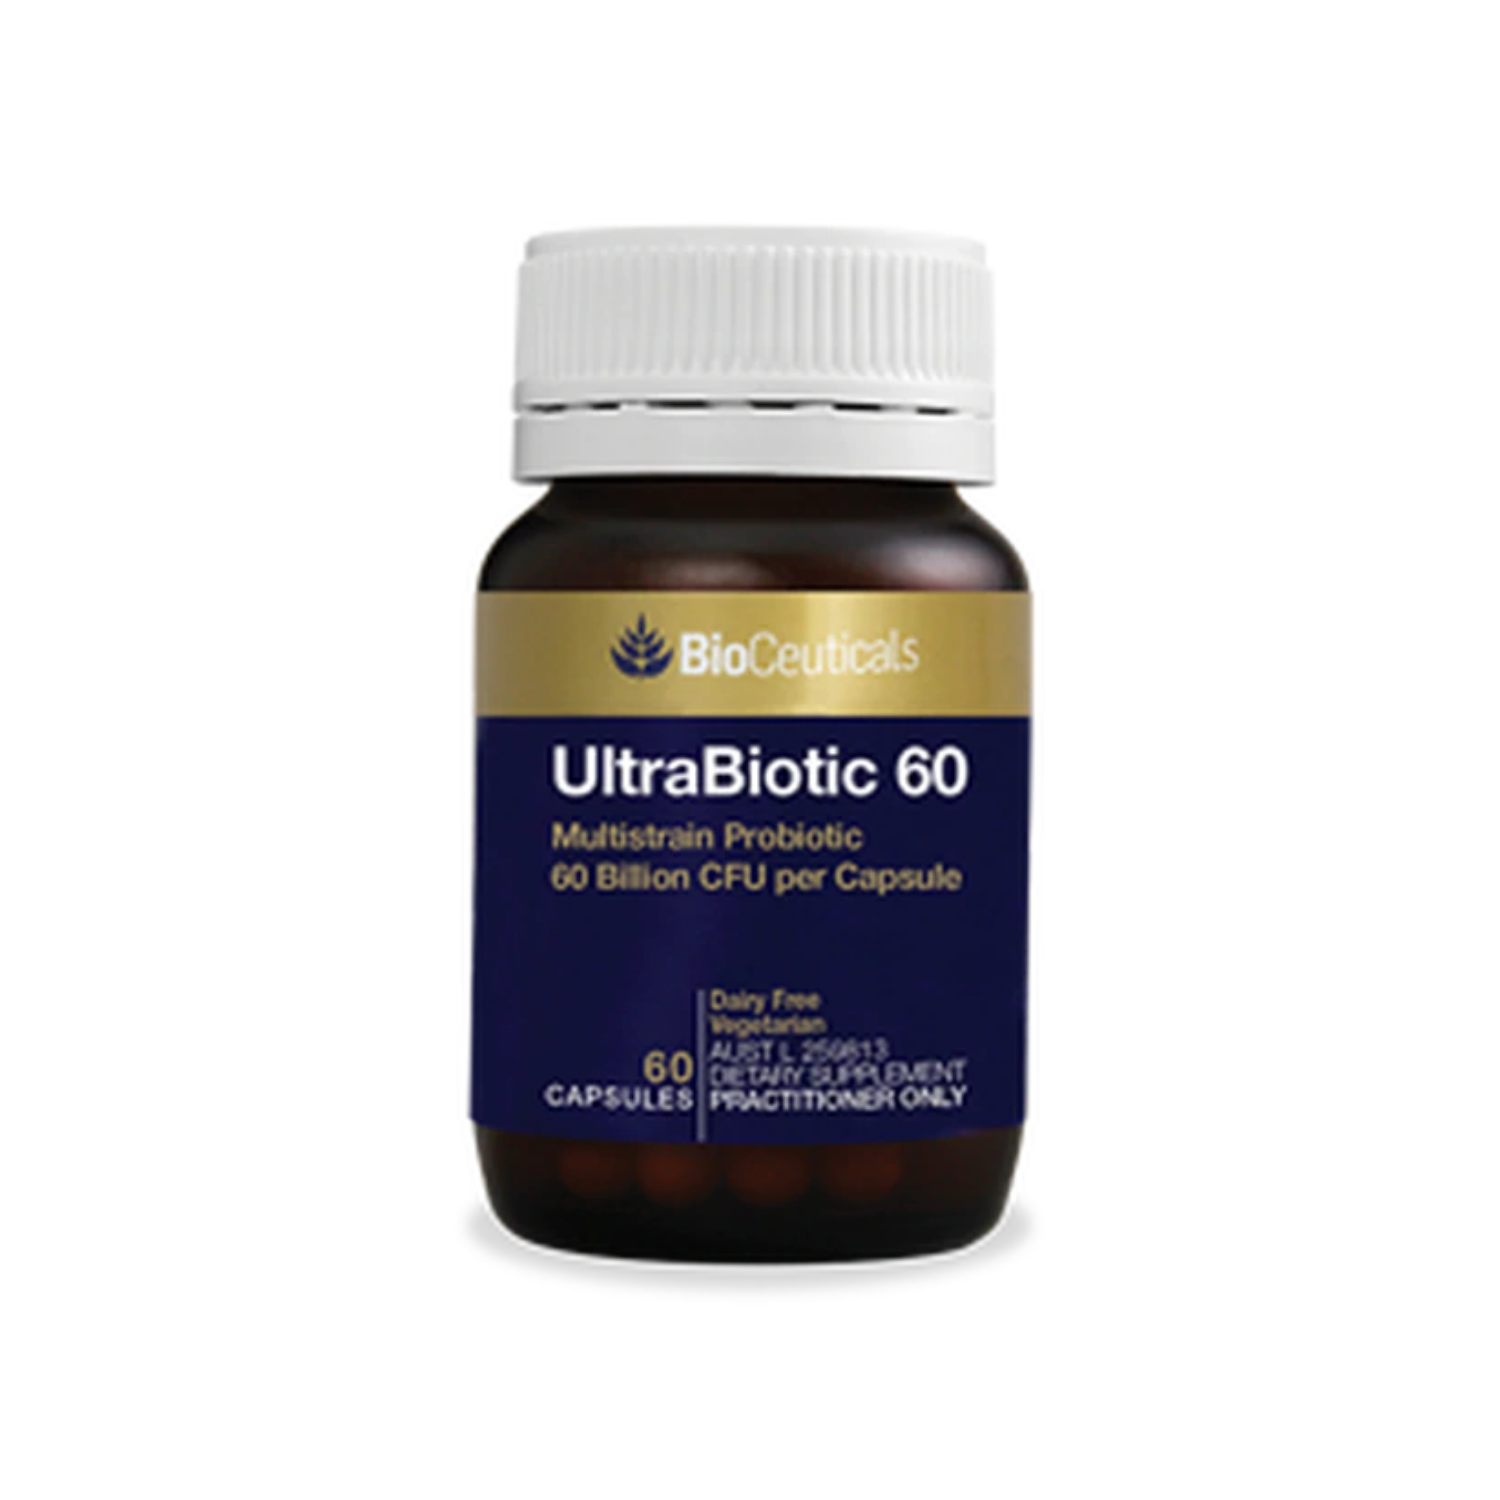 Bioceuticals Ultrabiotic 60 60 Capsules